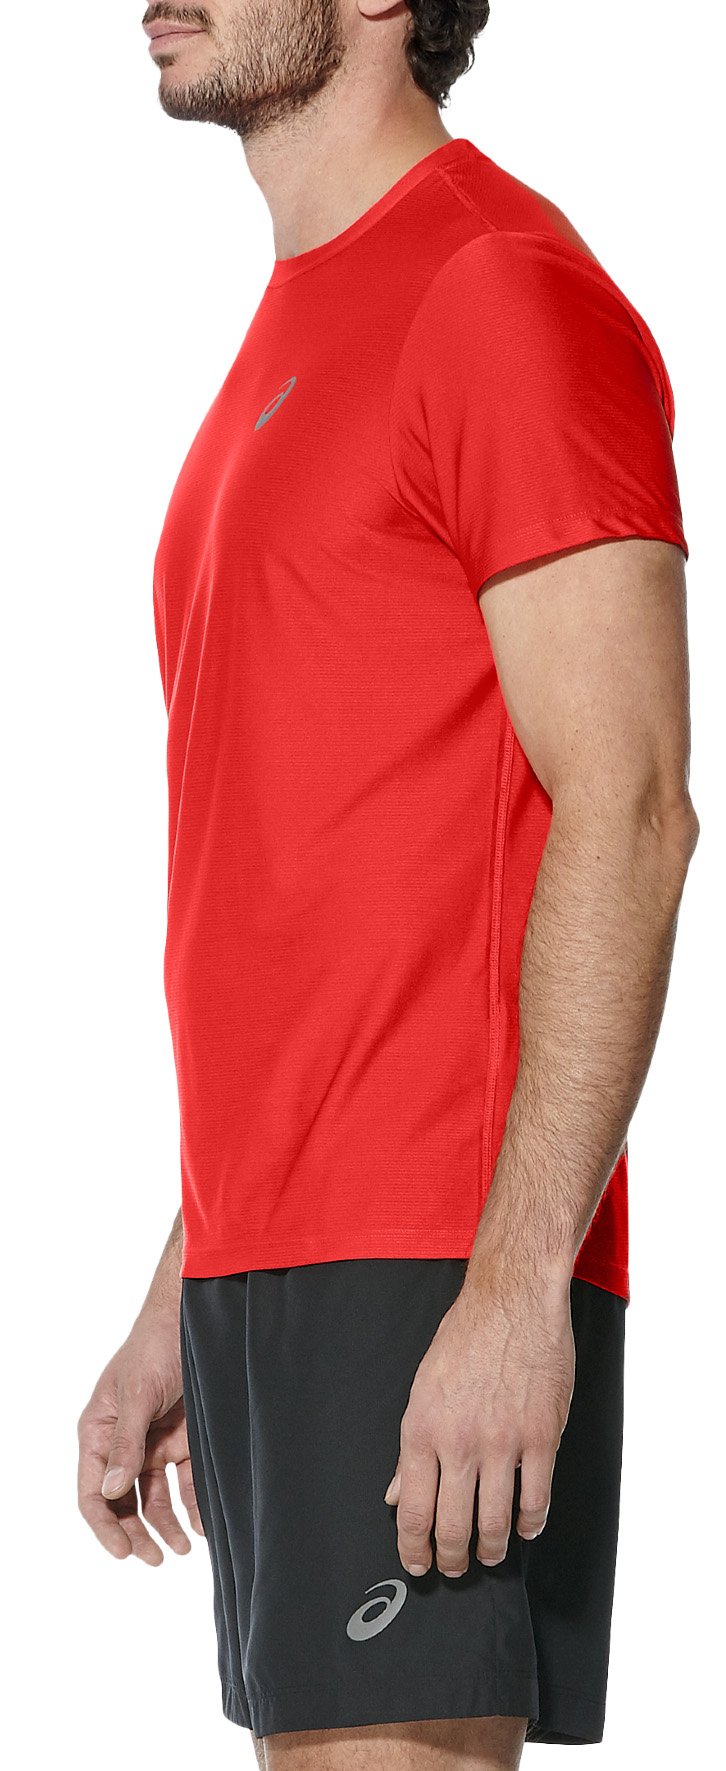 Pánské běžecké tričko Asics Top